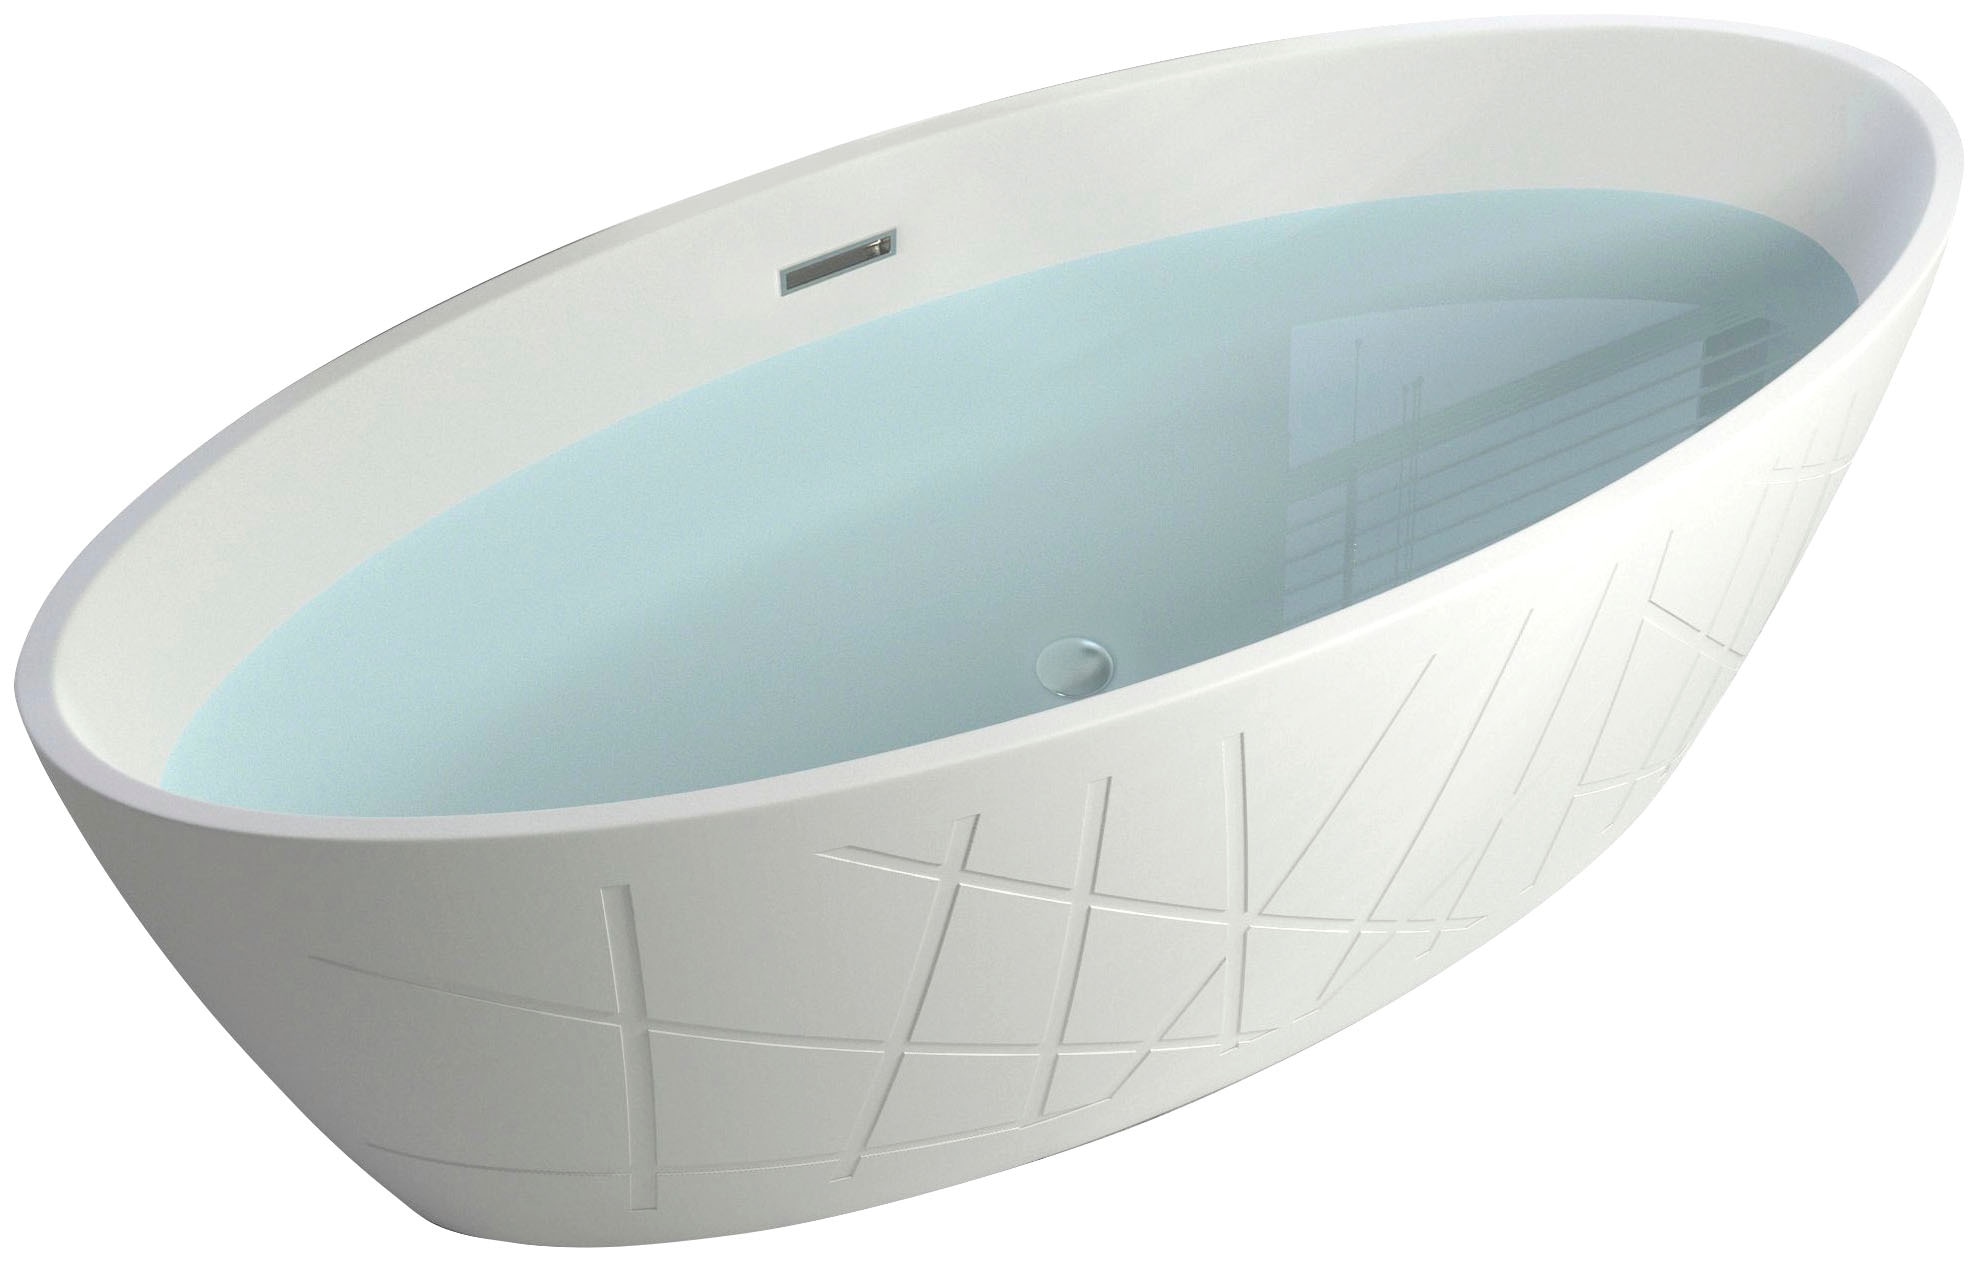 Sanotechnik Badewanne "Manhatten", Maße: 170x80,6x60cm